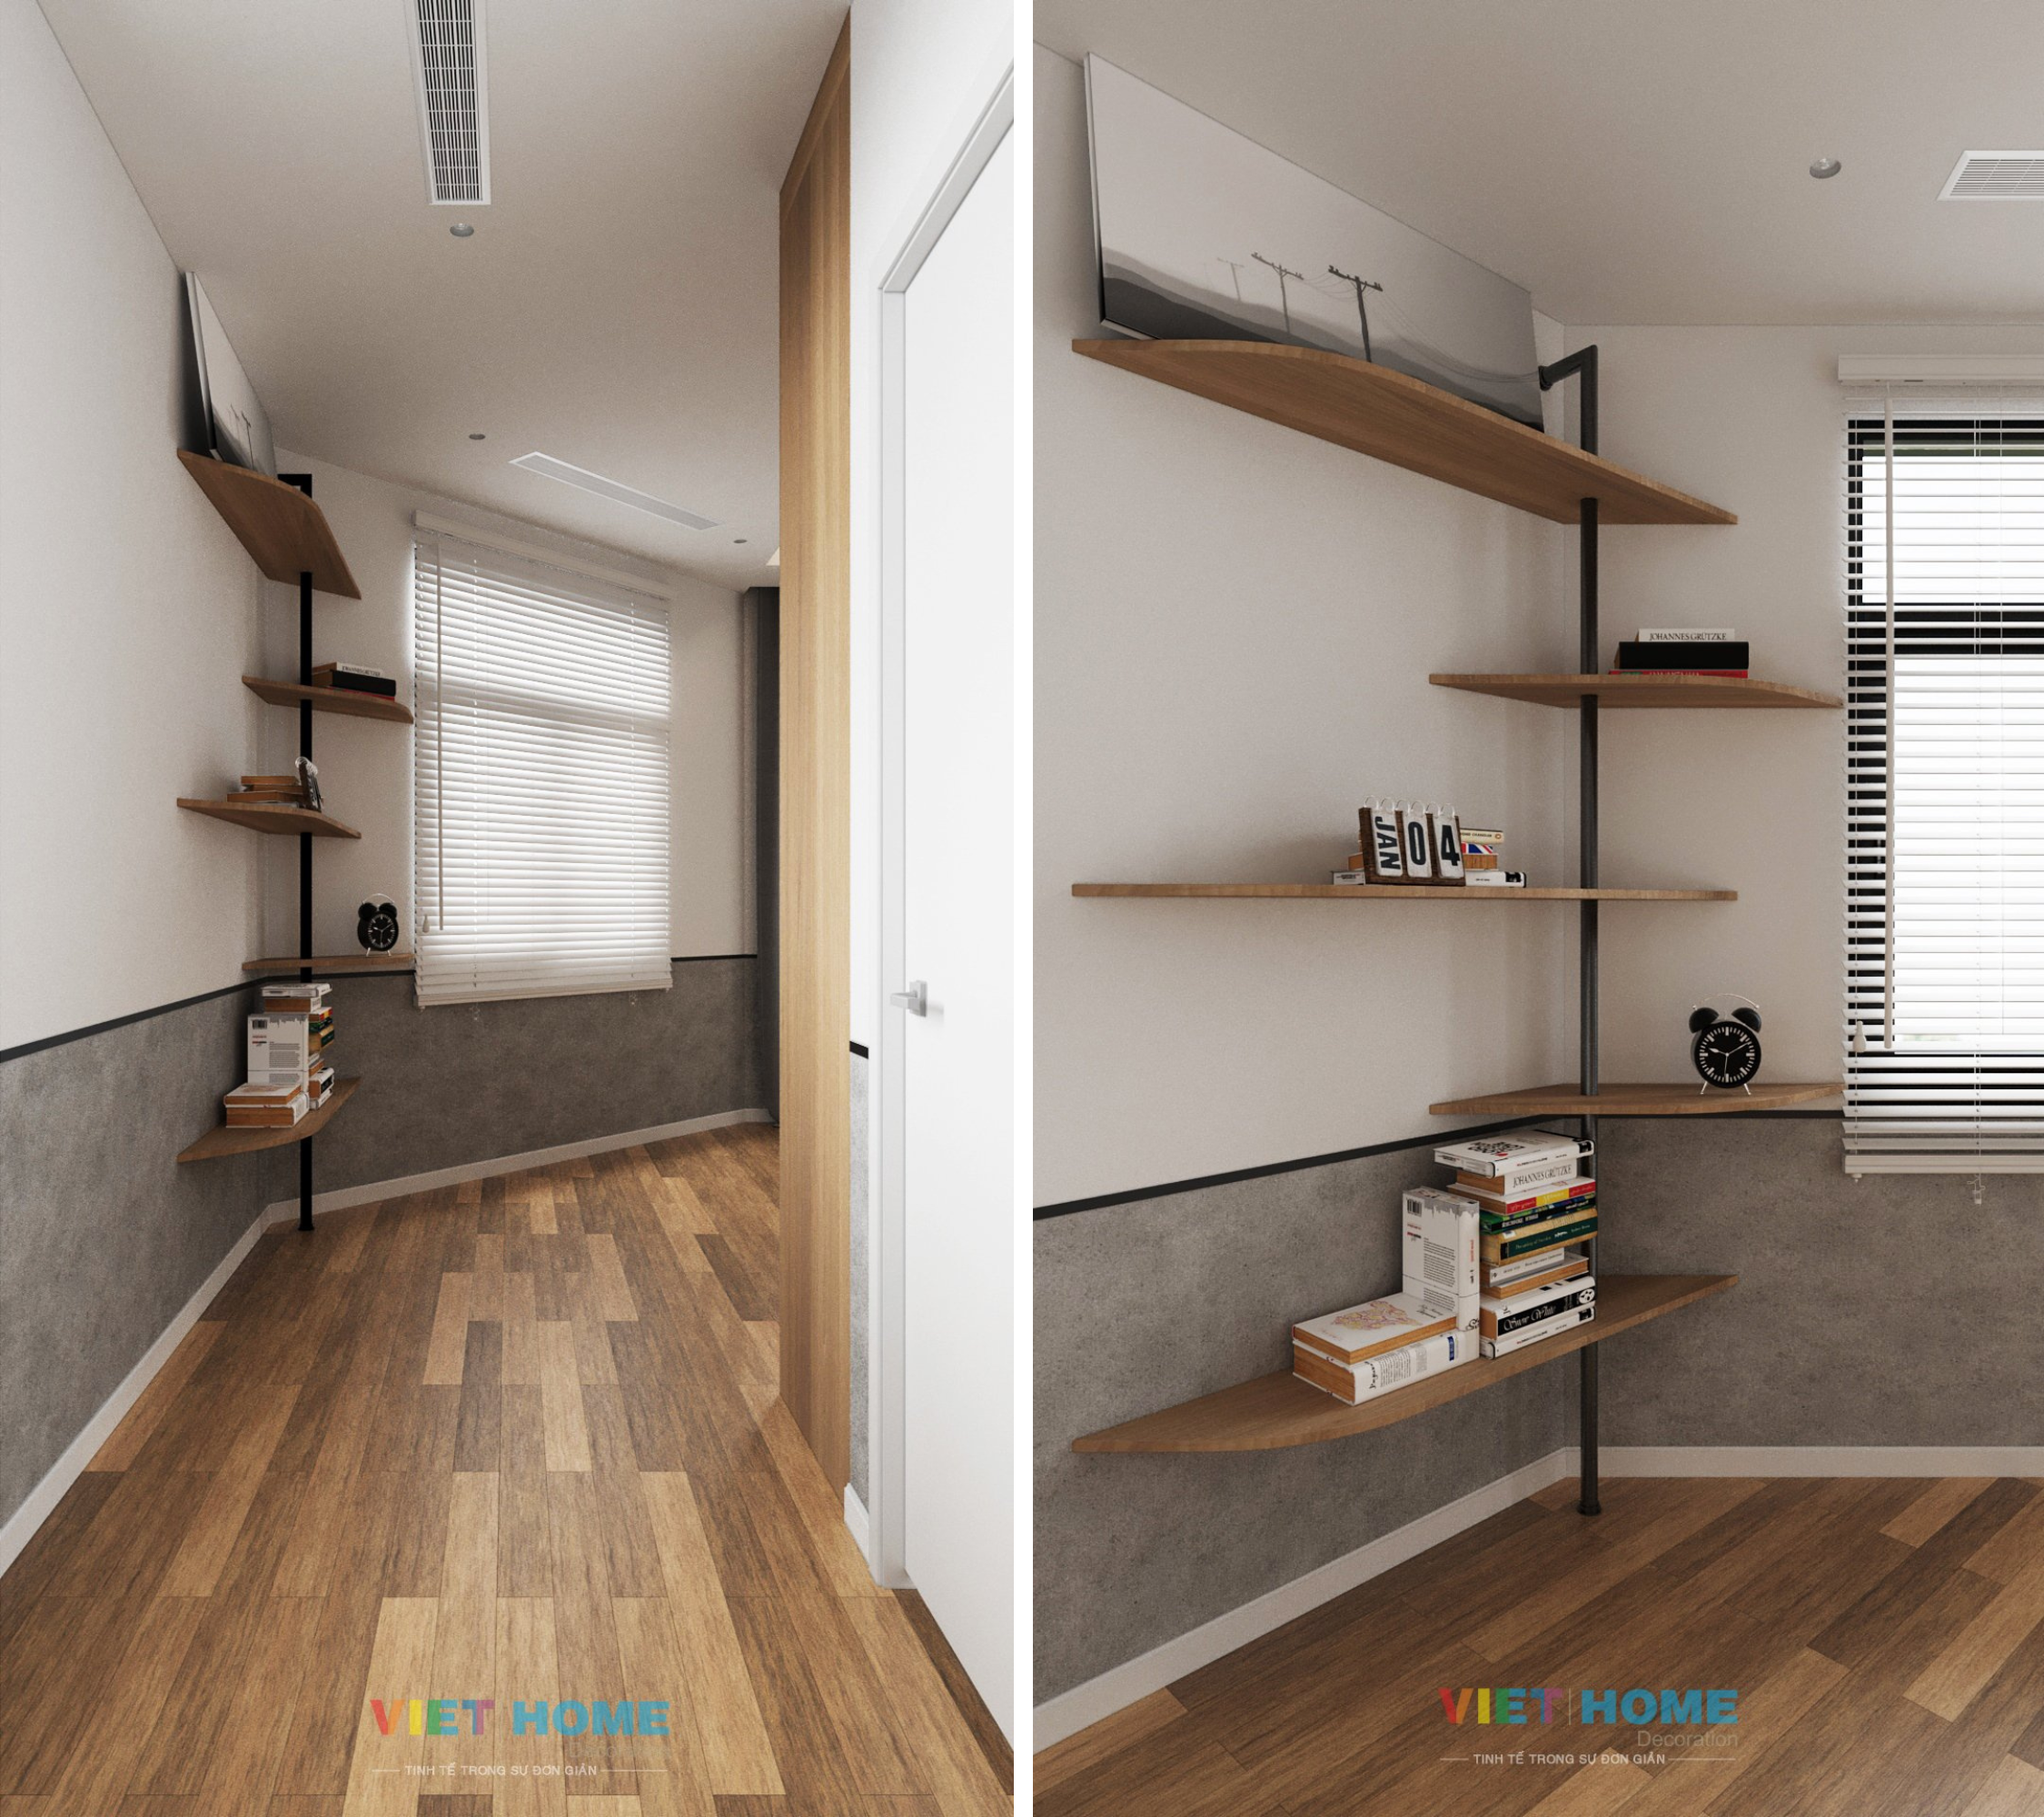 Chi tiết thiết kế nội thất phòng ngủ tầng 2 dự án La Vida Residences